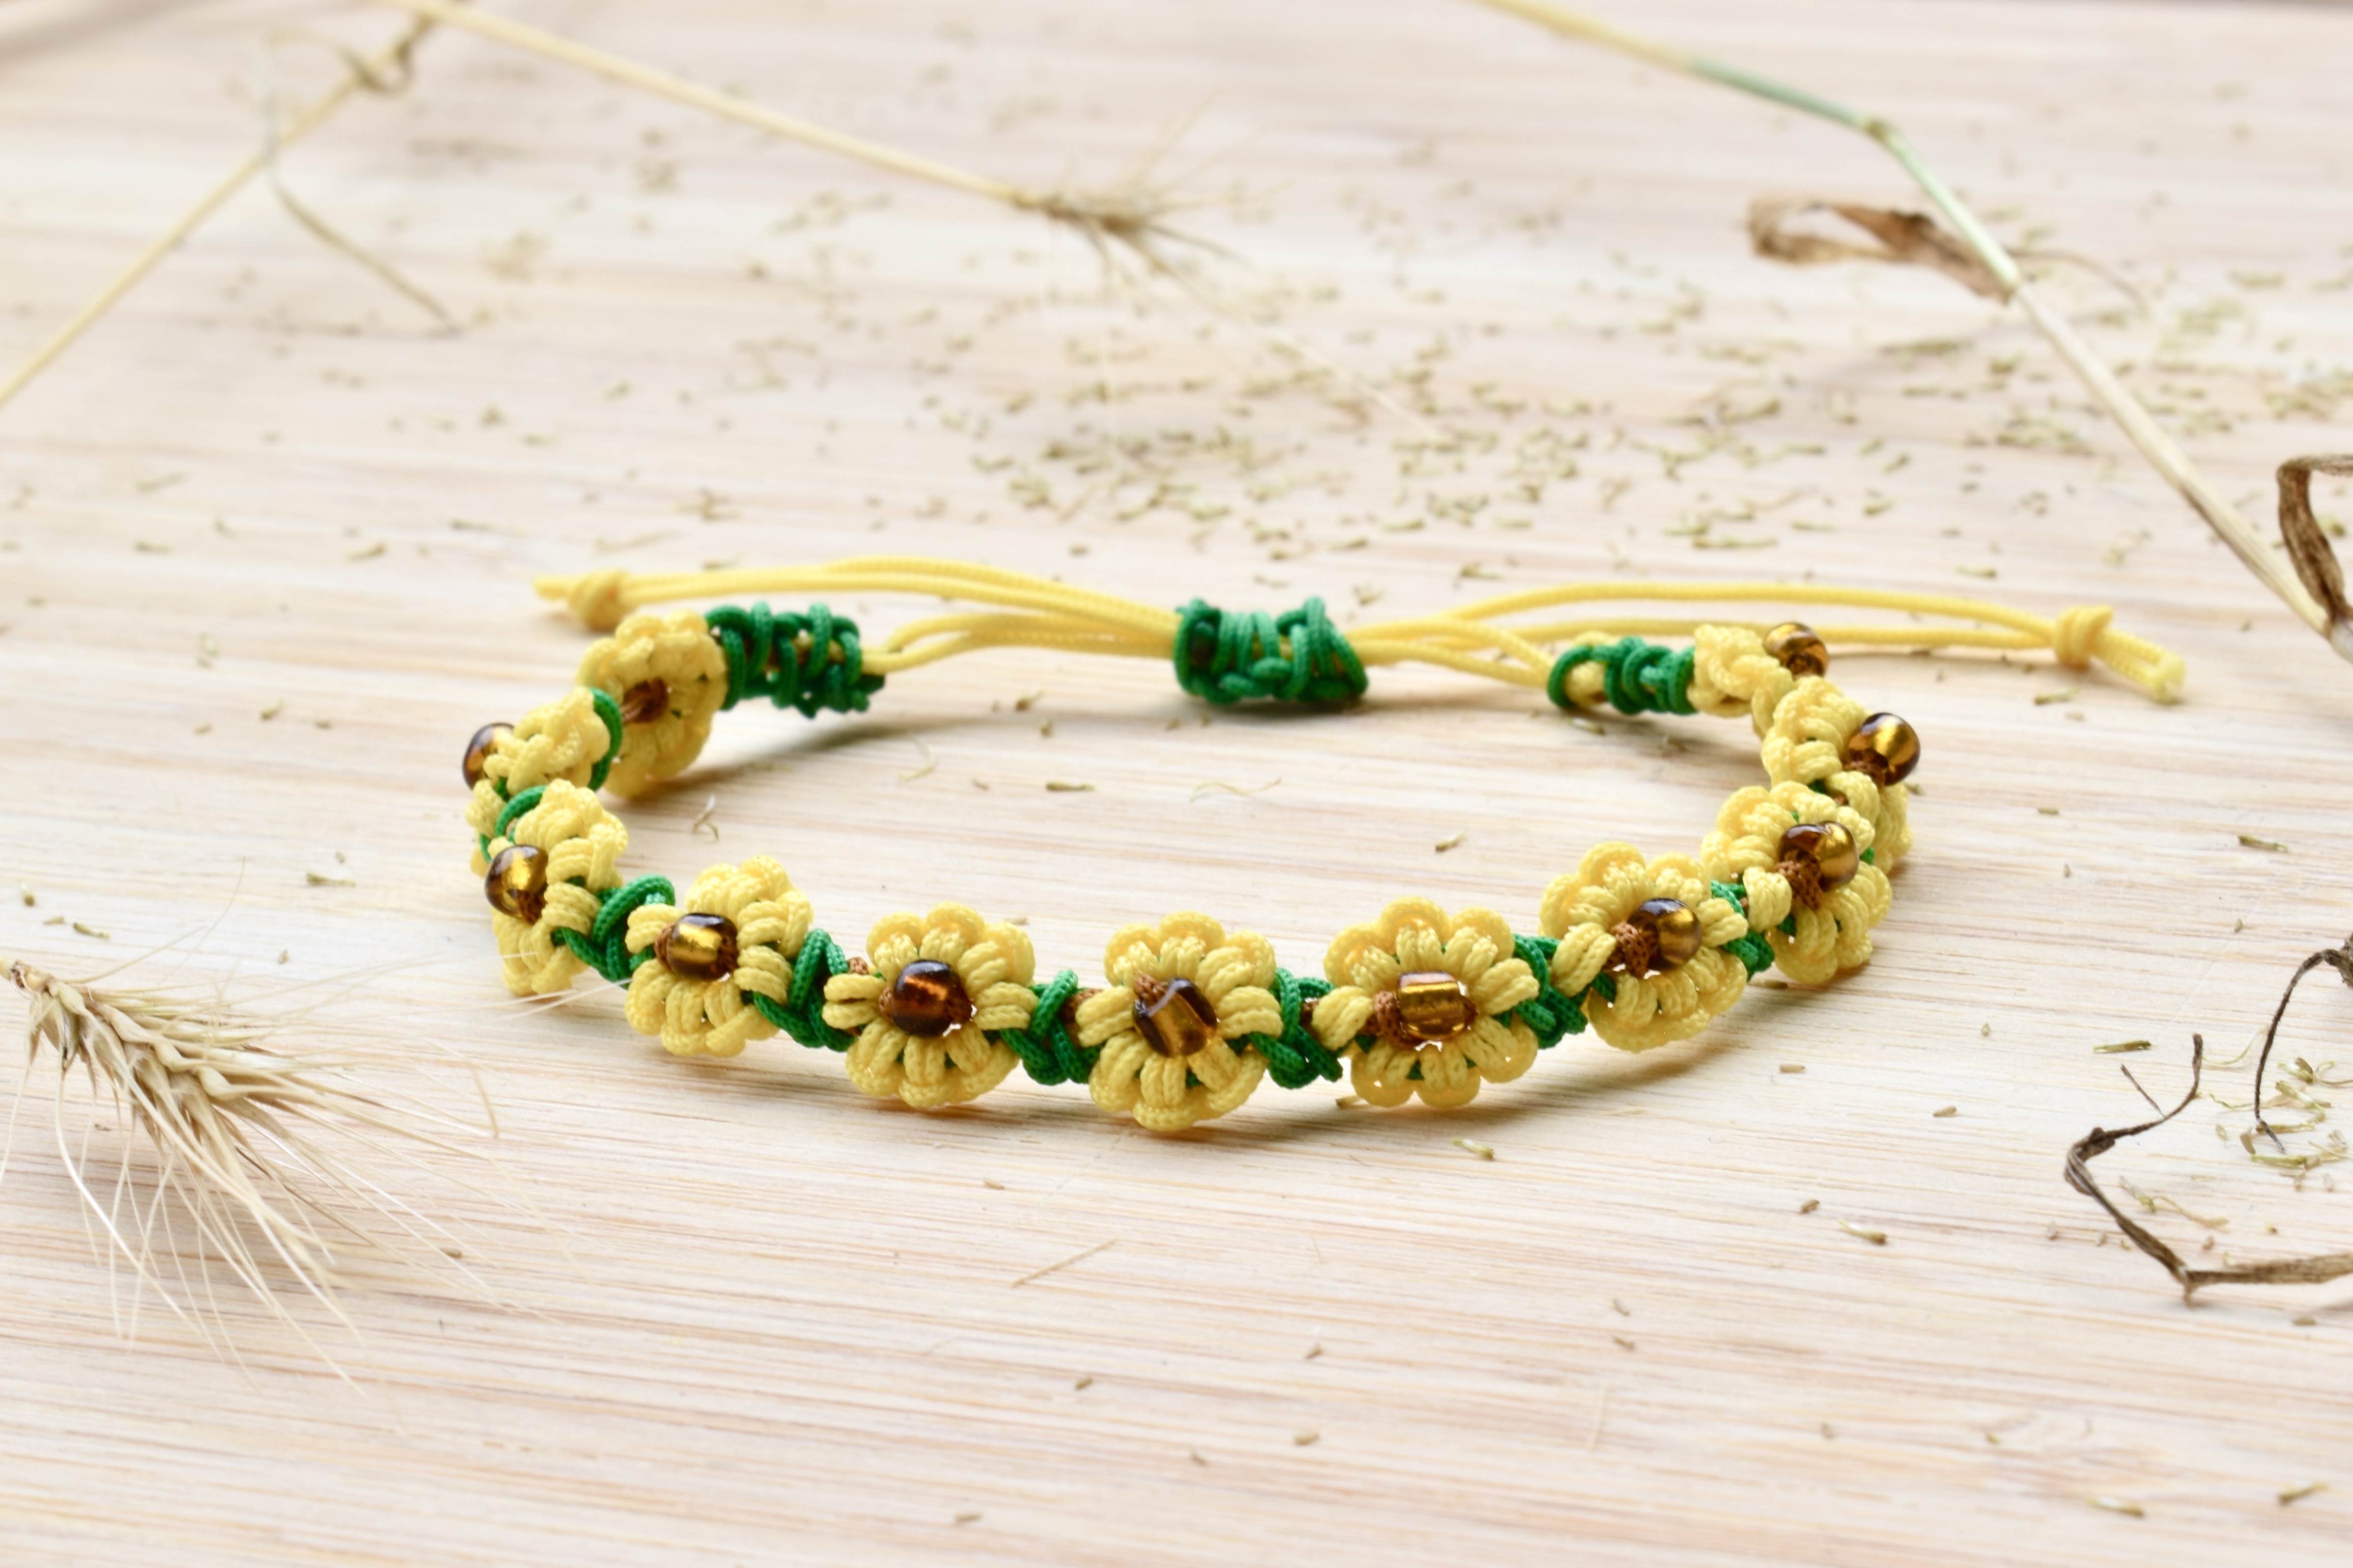 Sunflower bracelet